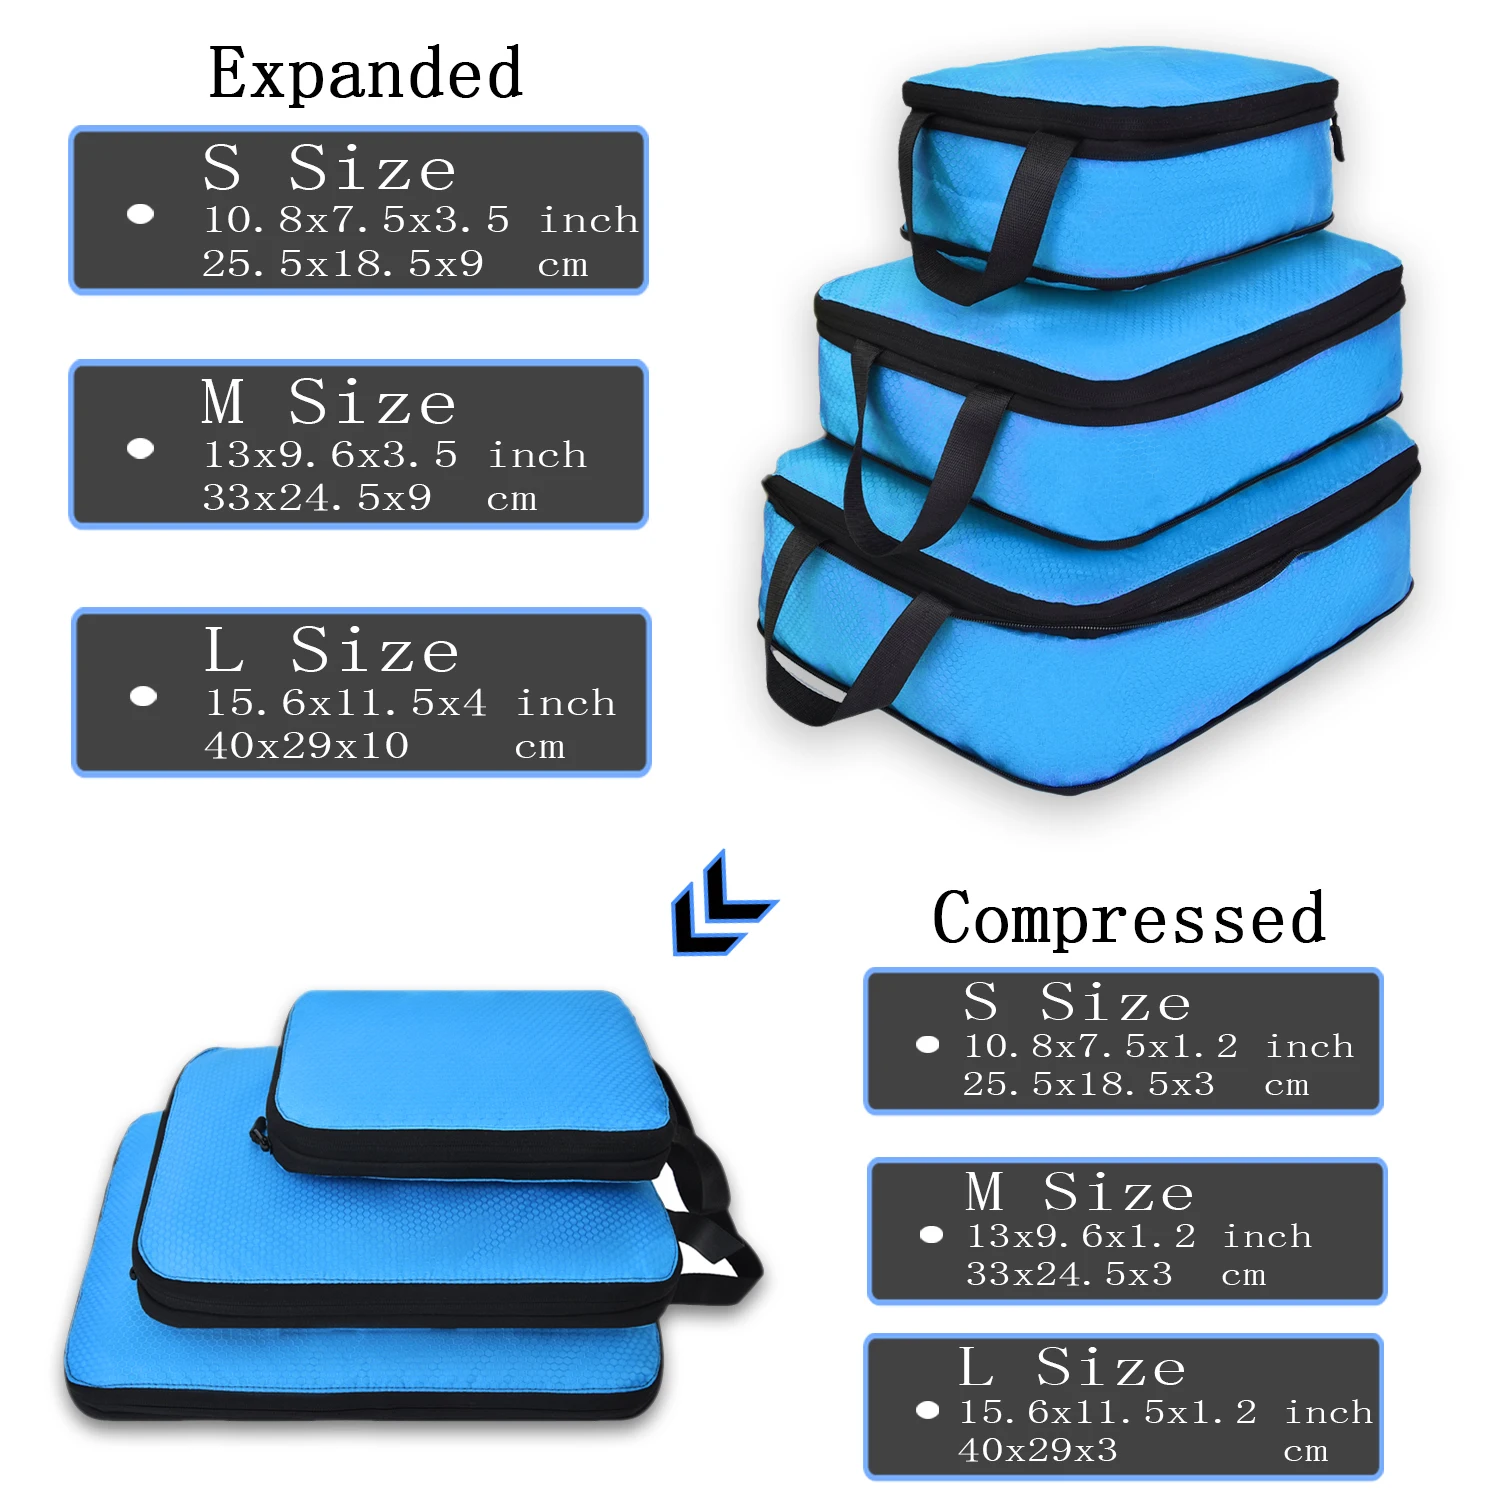 Soperwillton набор компрессионных упаковочных кубиков для путешествий 3 размера 3 6 штук органайзер для упаковки багажа для путешествий Аксессуары#9004